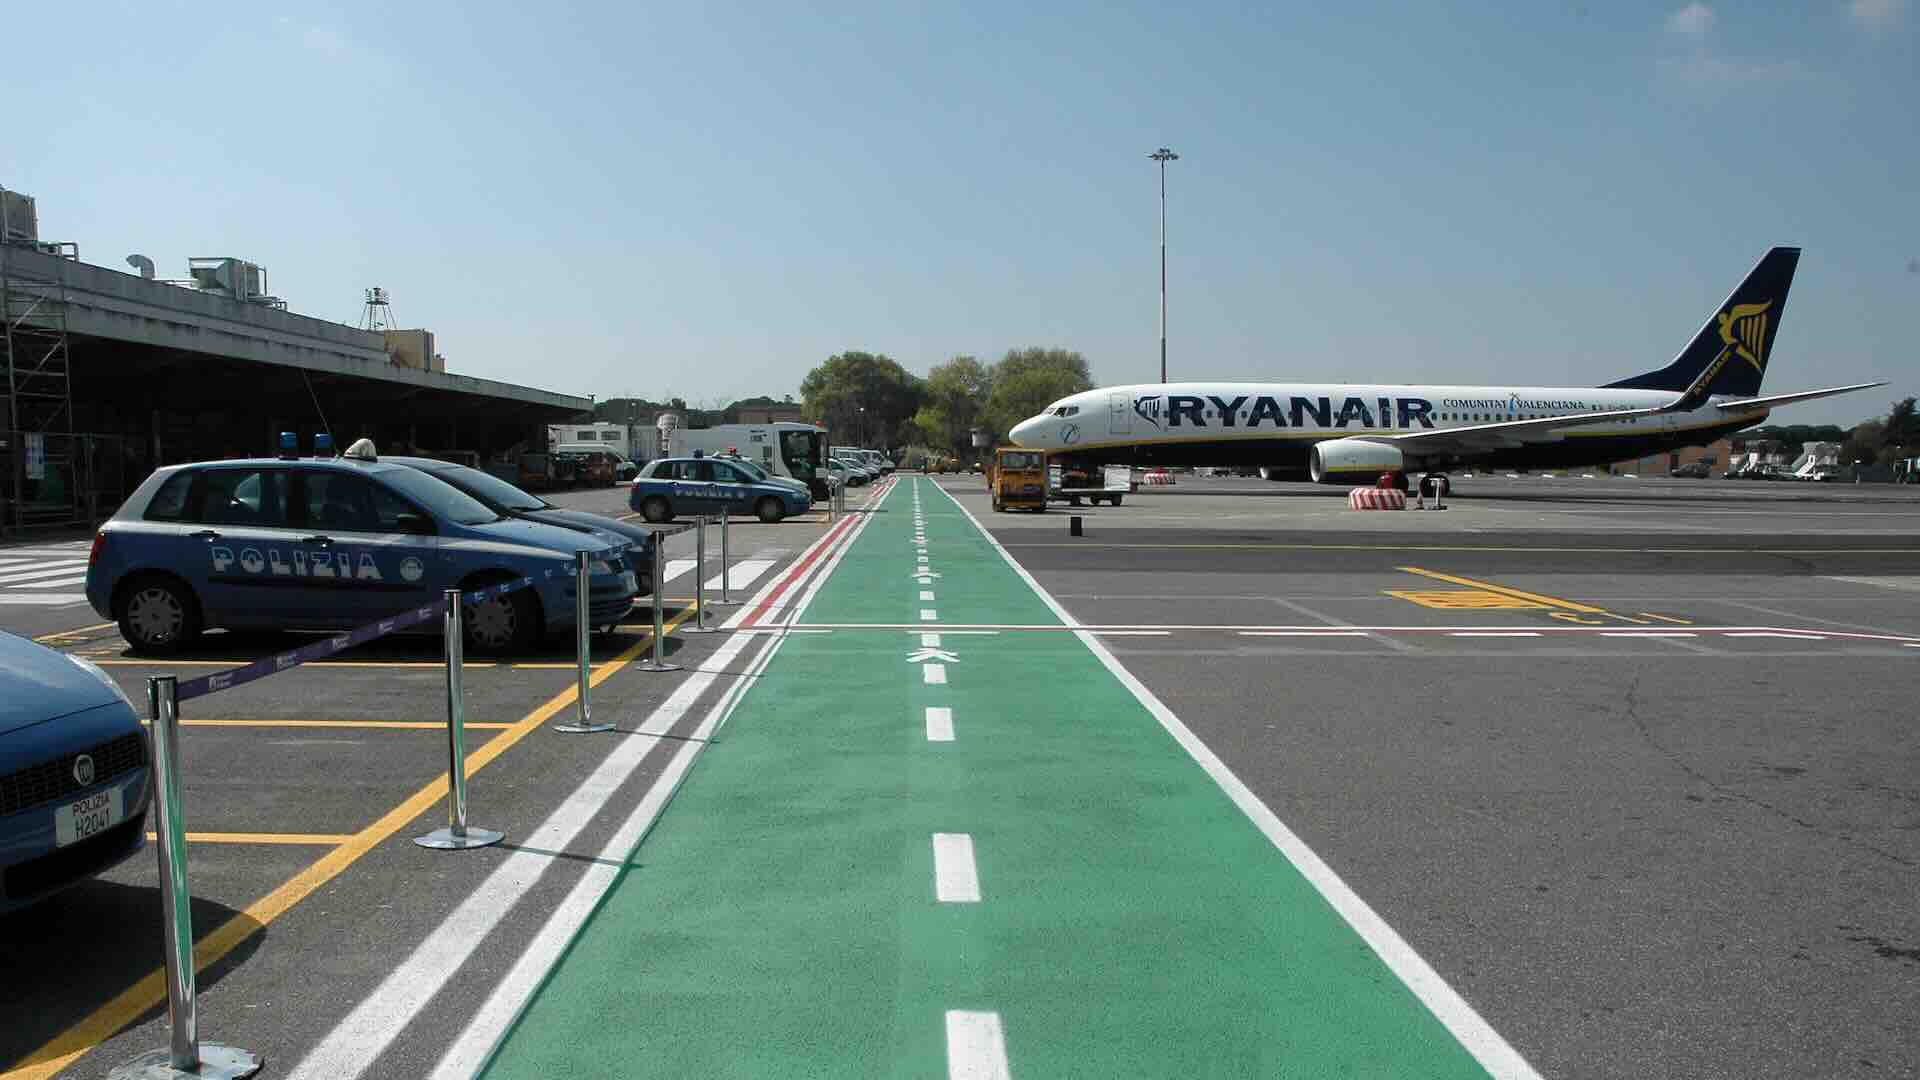 Stop voli notturni da Ciampino per Ryanair: piano anti rumore Enac confermato dal Tar Lazio